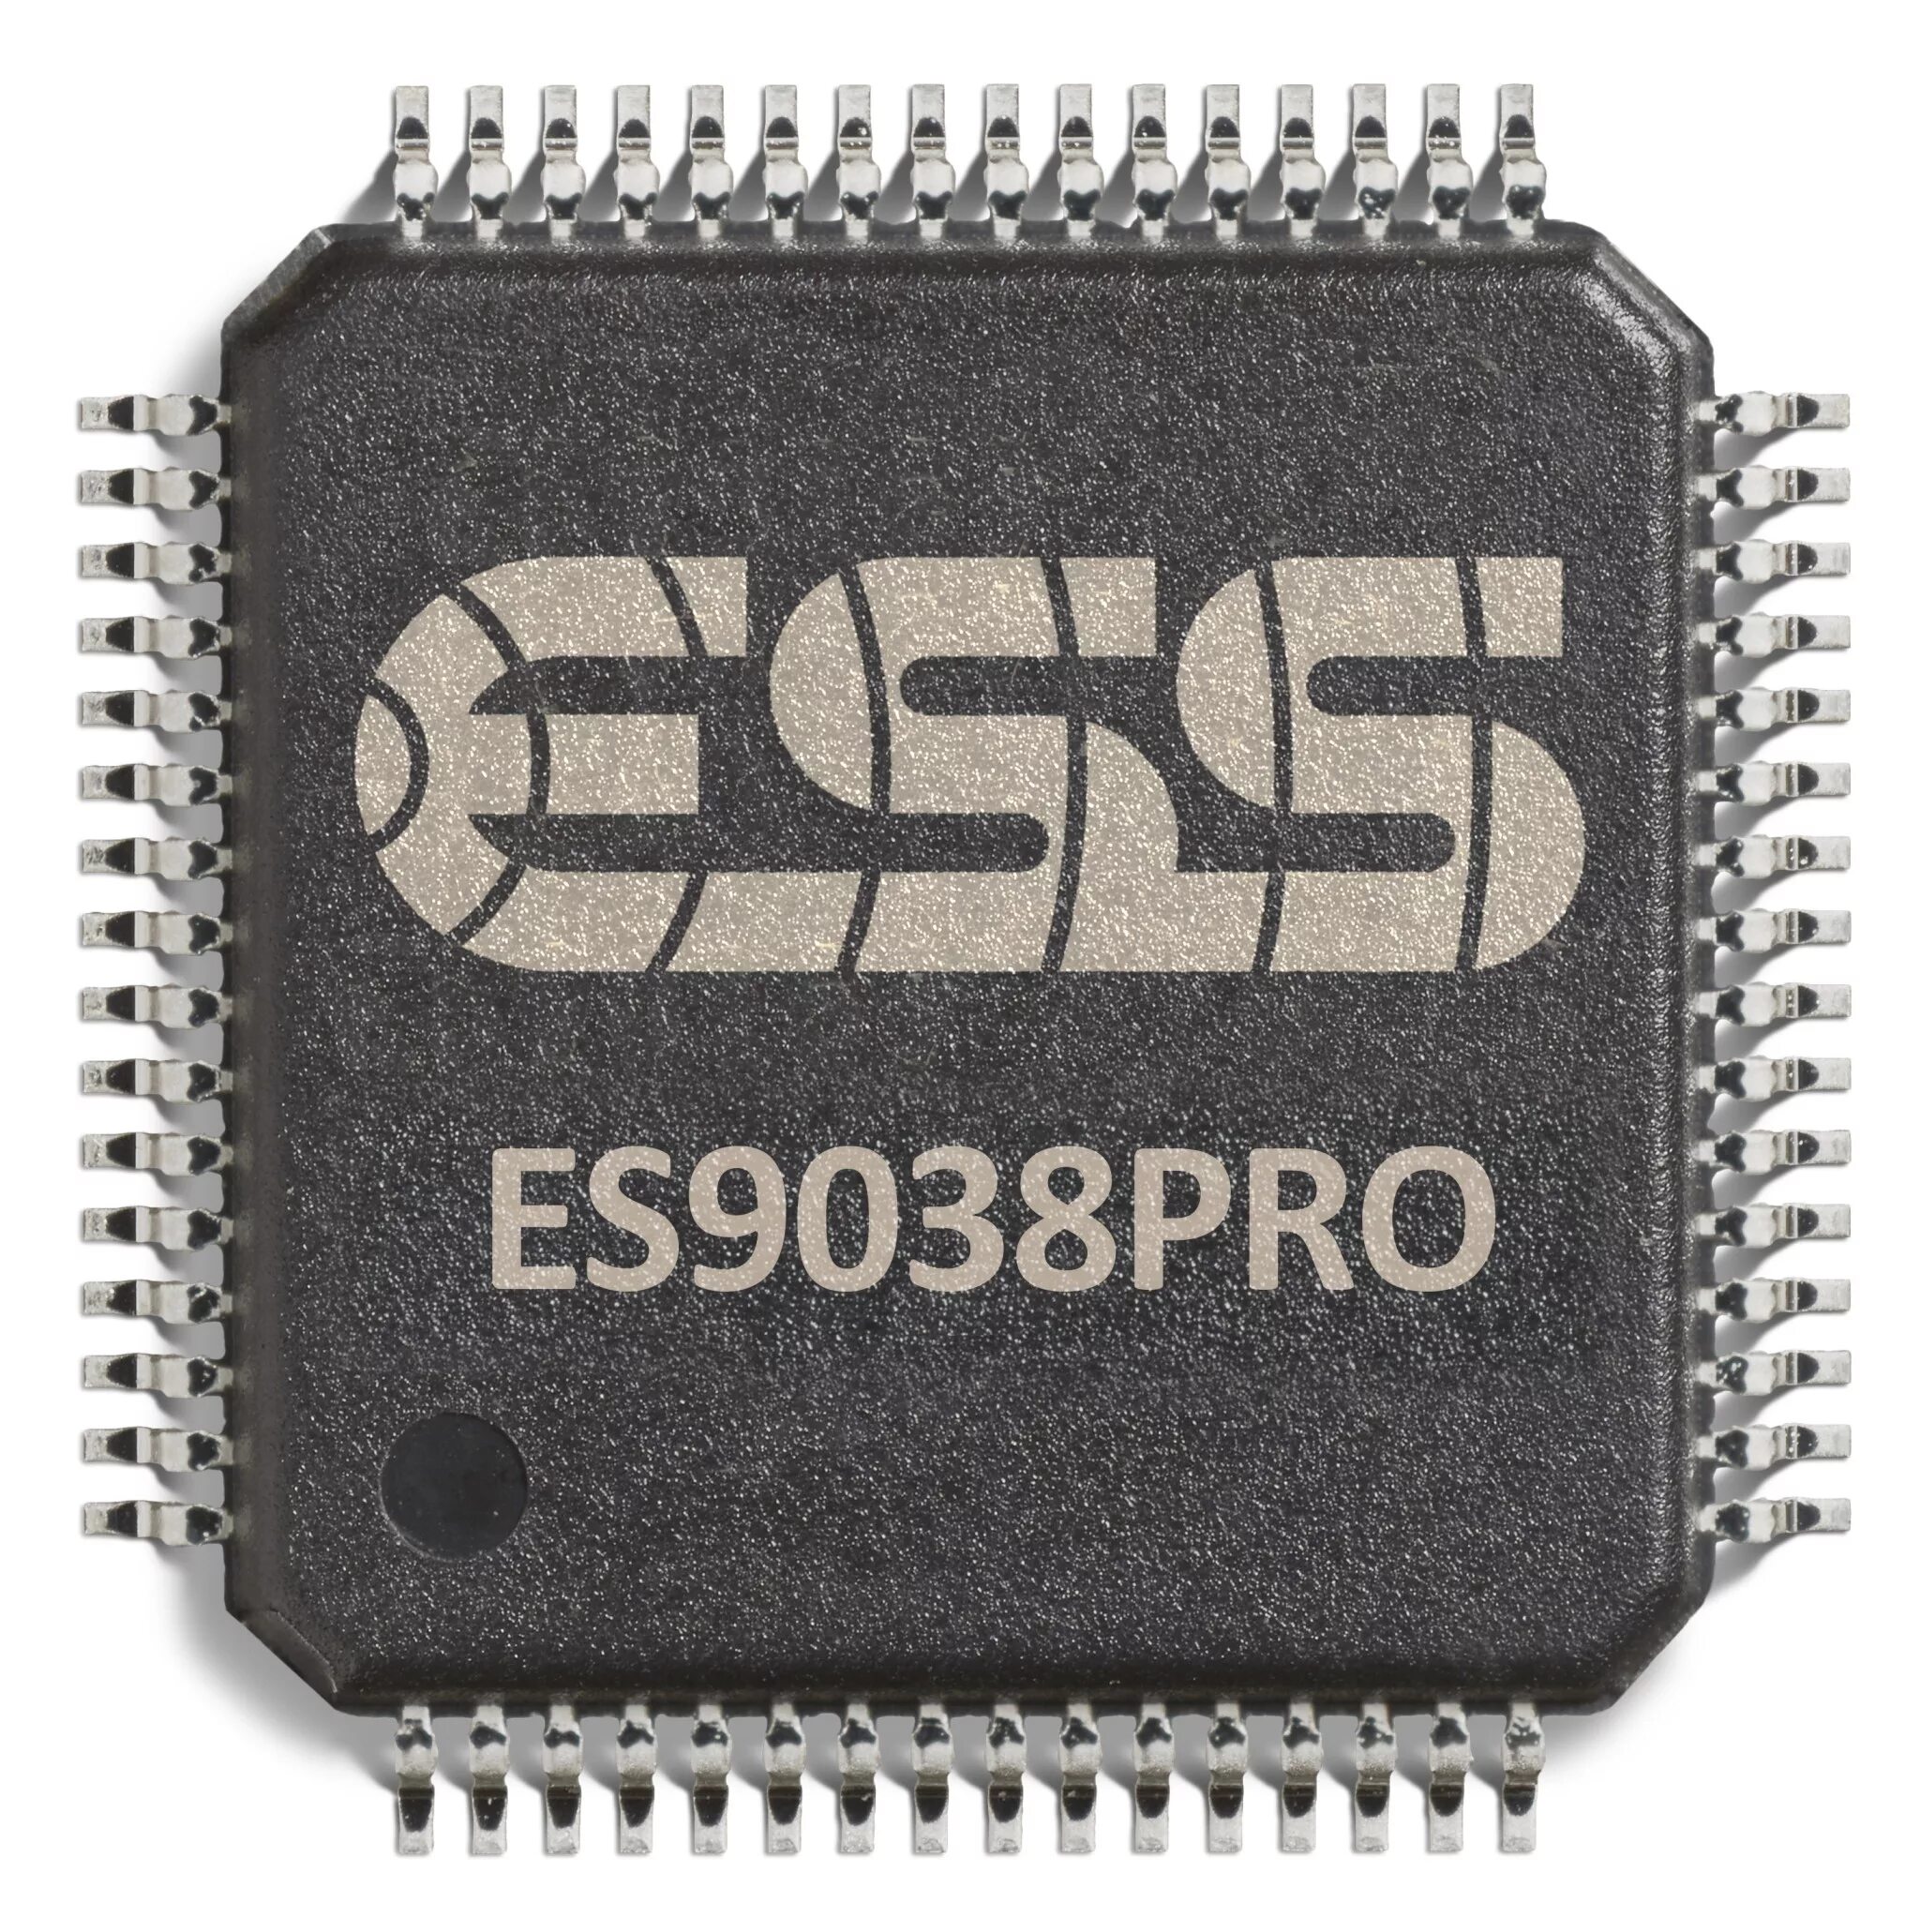 Es9038pro. Es9038pro чип. ЦАП/DAC на чипе Sabre es9038pro. Чип ESS 9038.